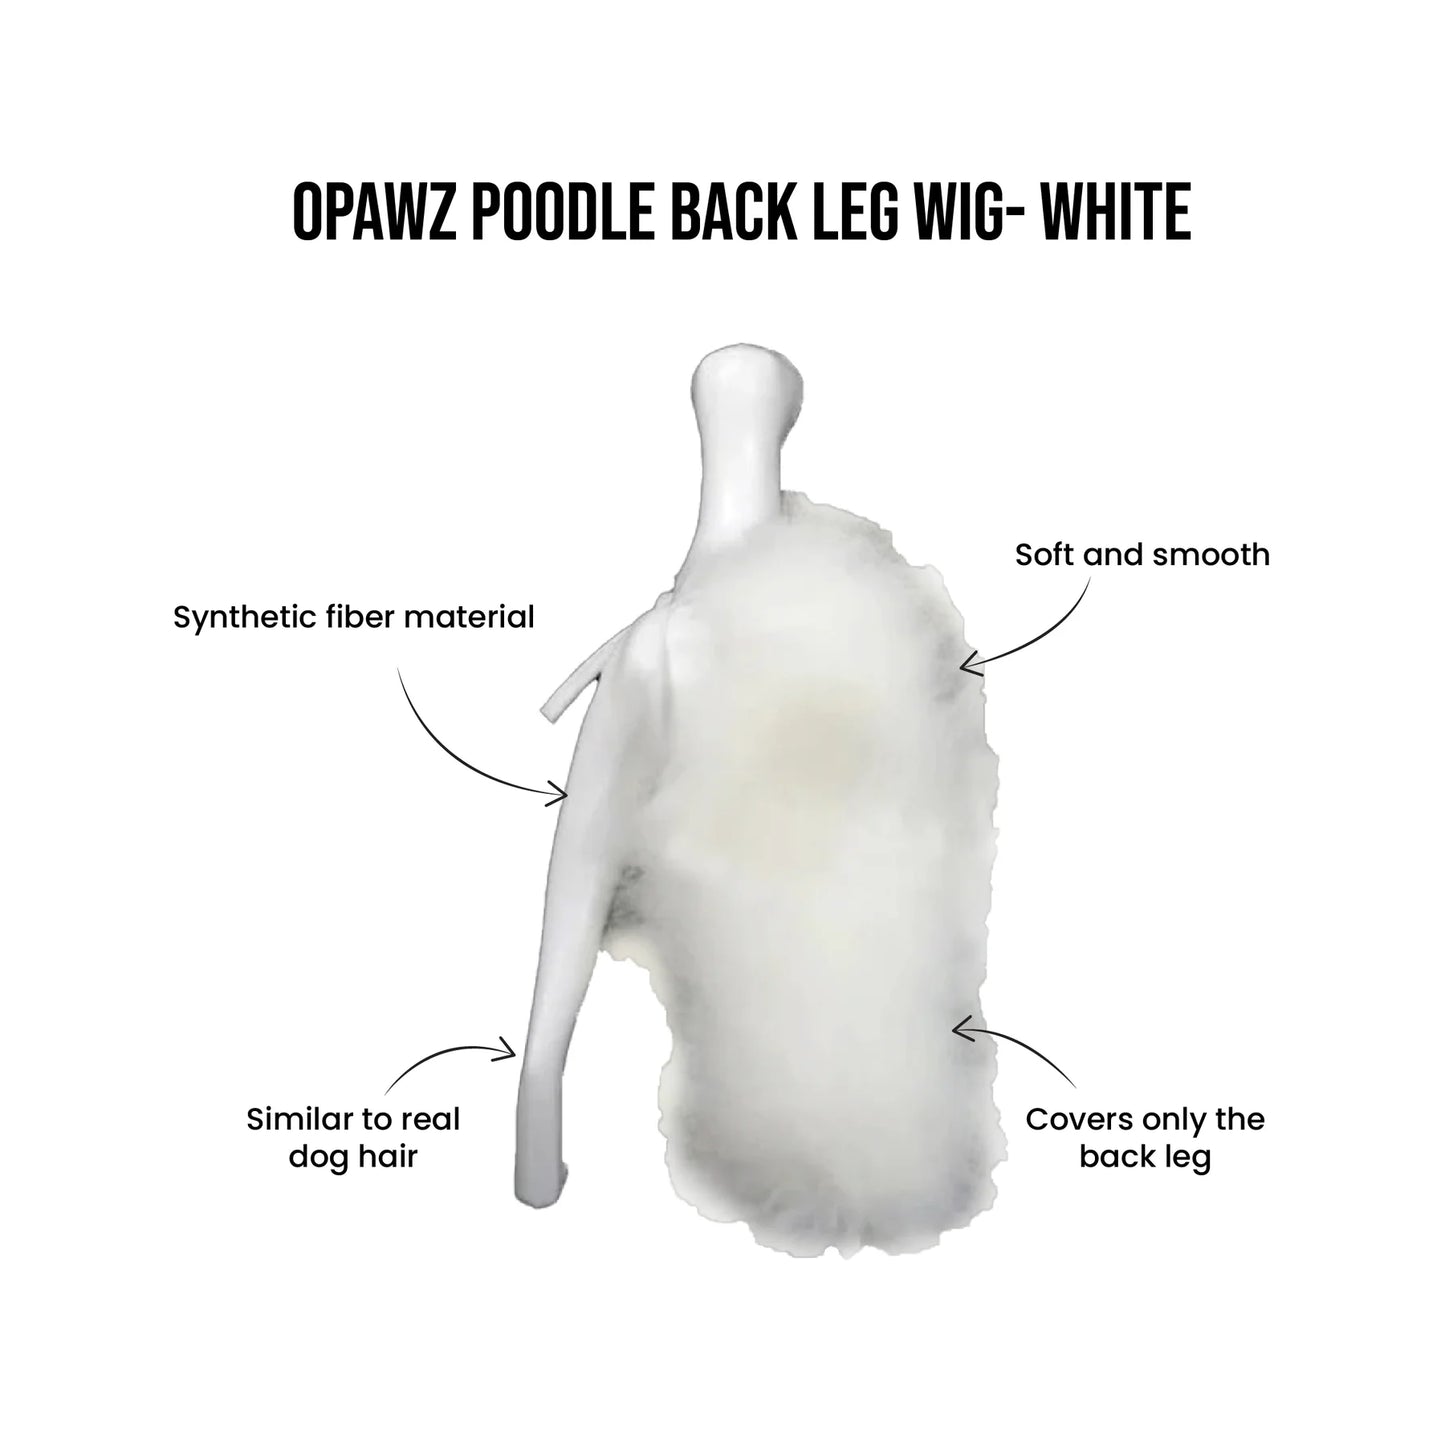 Opawz Poodle Back Leg Wig White